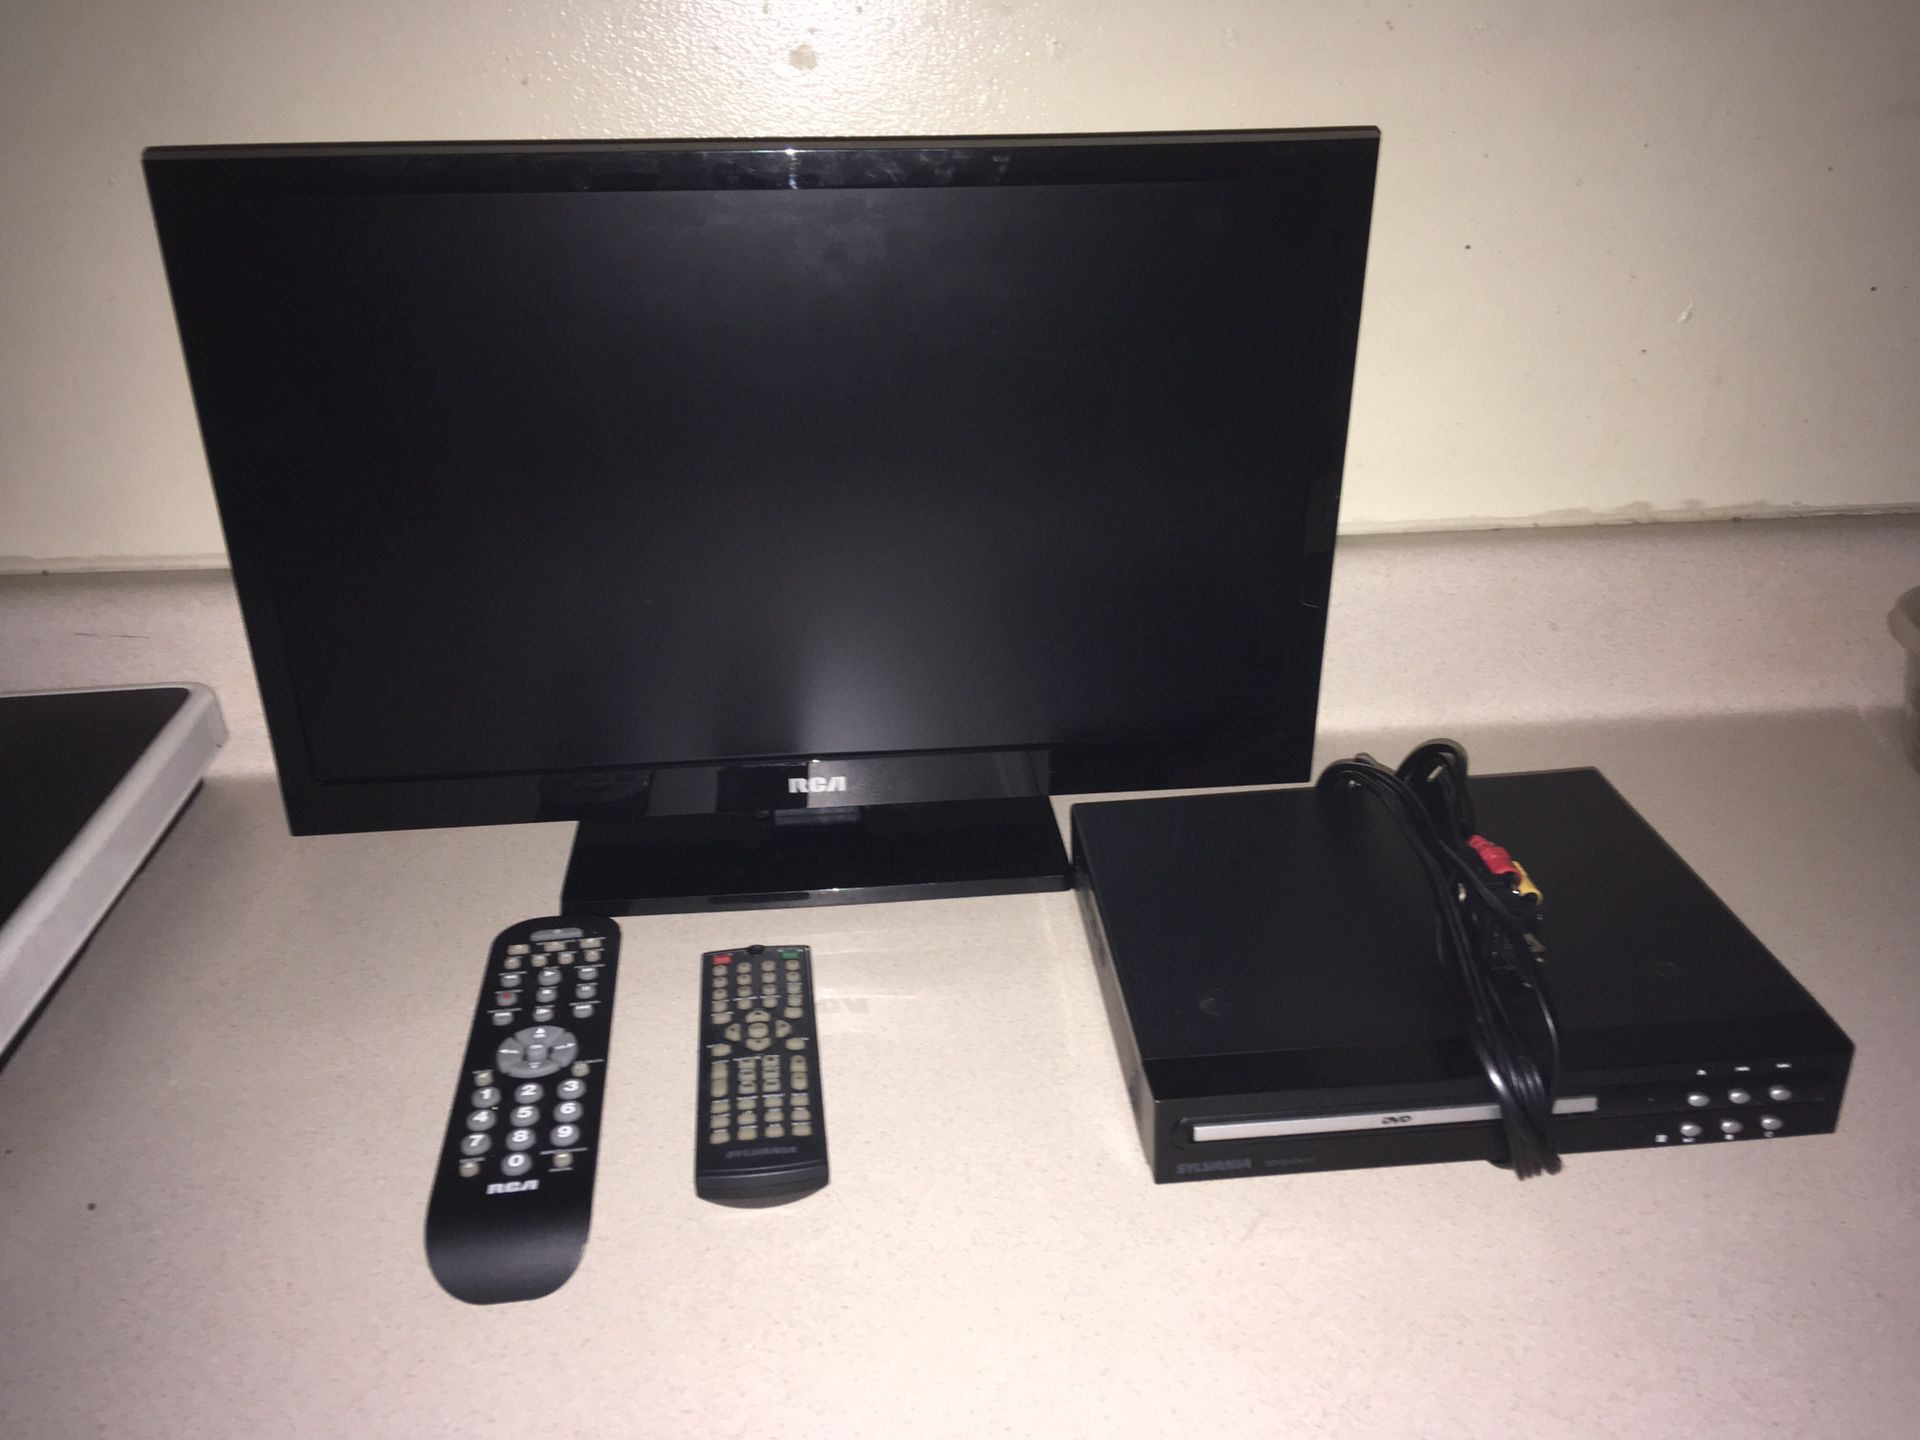 Flatscreen 19” TV & DVD Player